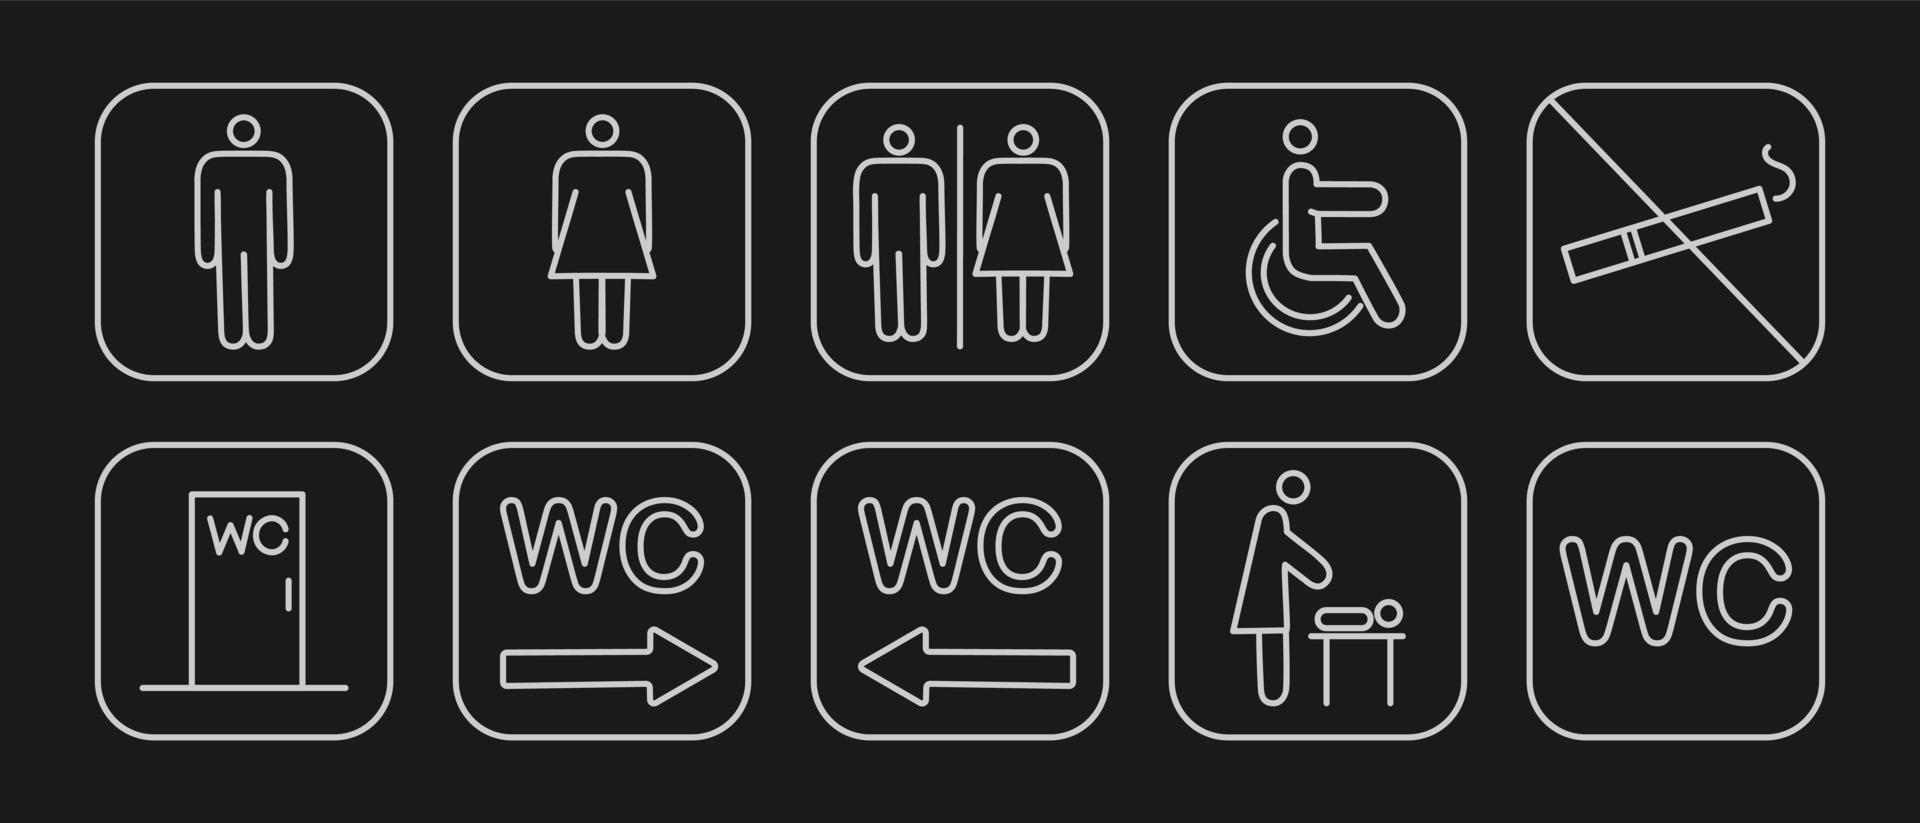 stel toiletnavigatiepictogrammen in. bewegwijzering wc vrouw man voor gehandicapten en moeder en kind kamer. vector illustratie